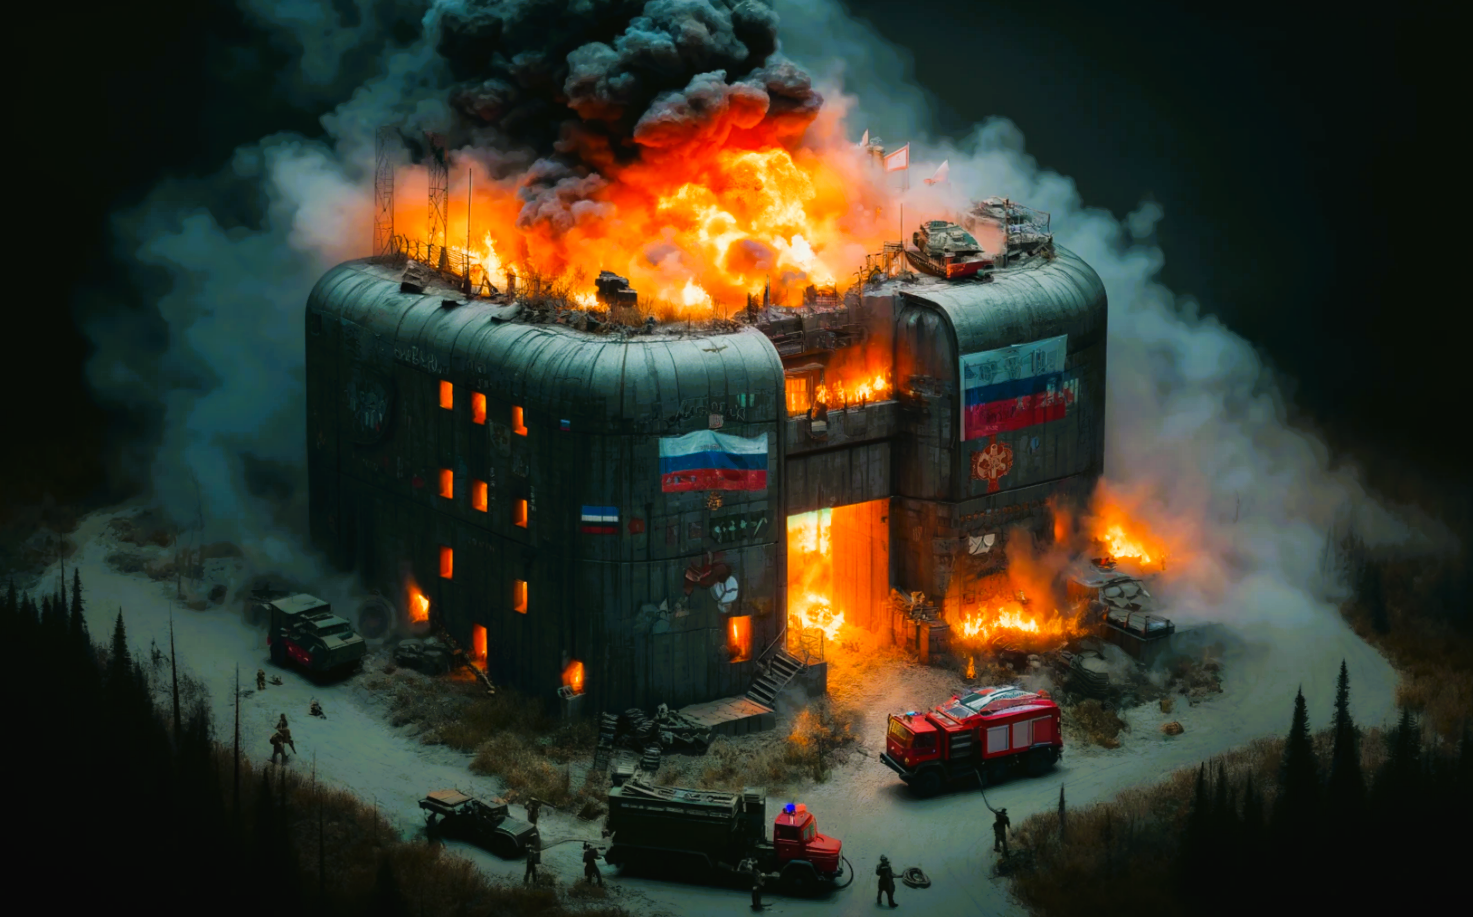 Putins Bunker-Palast brennt! Geheimer Rückzugsort von Putin enttarnt? Bunker in Altai teilweise abgebrannt